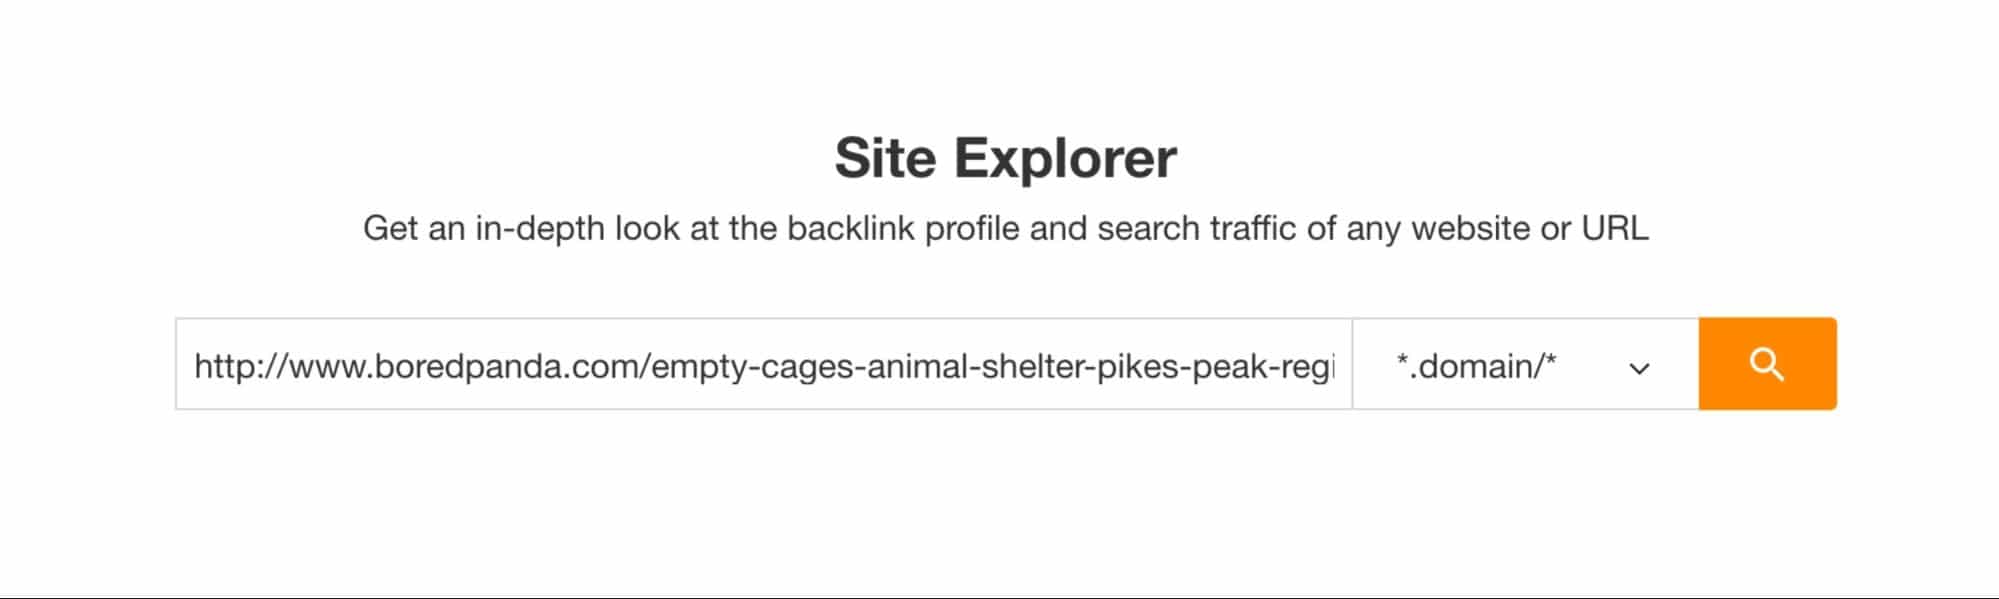 Ahrefs – Search Backlink Profile 